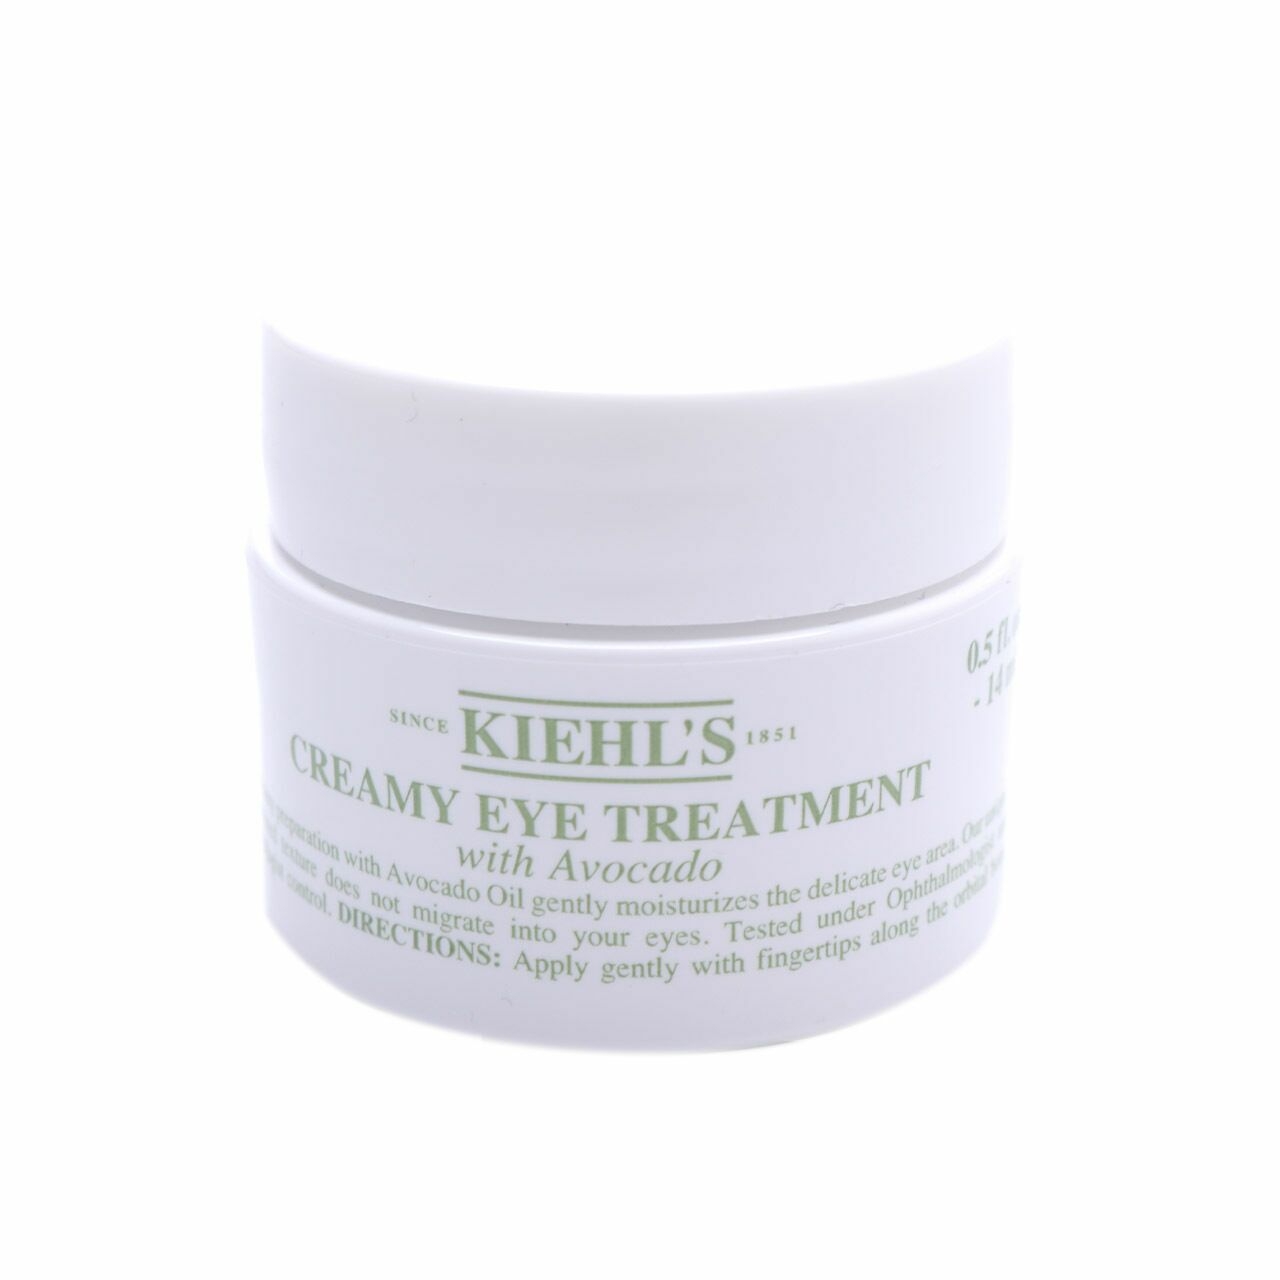 Kiehl's Creamy Eye Treatment with Avocado Eyes